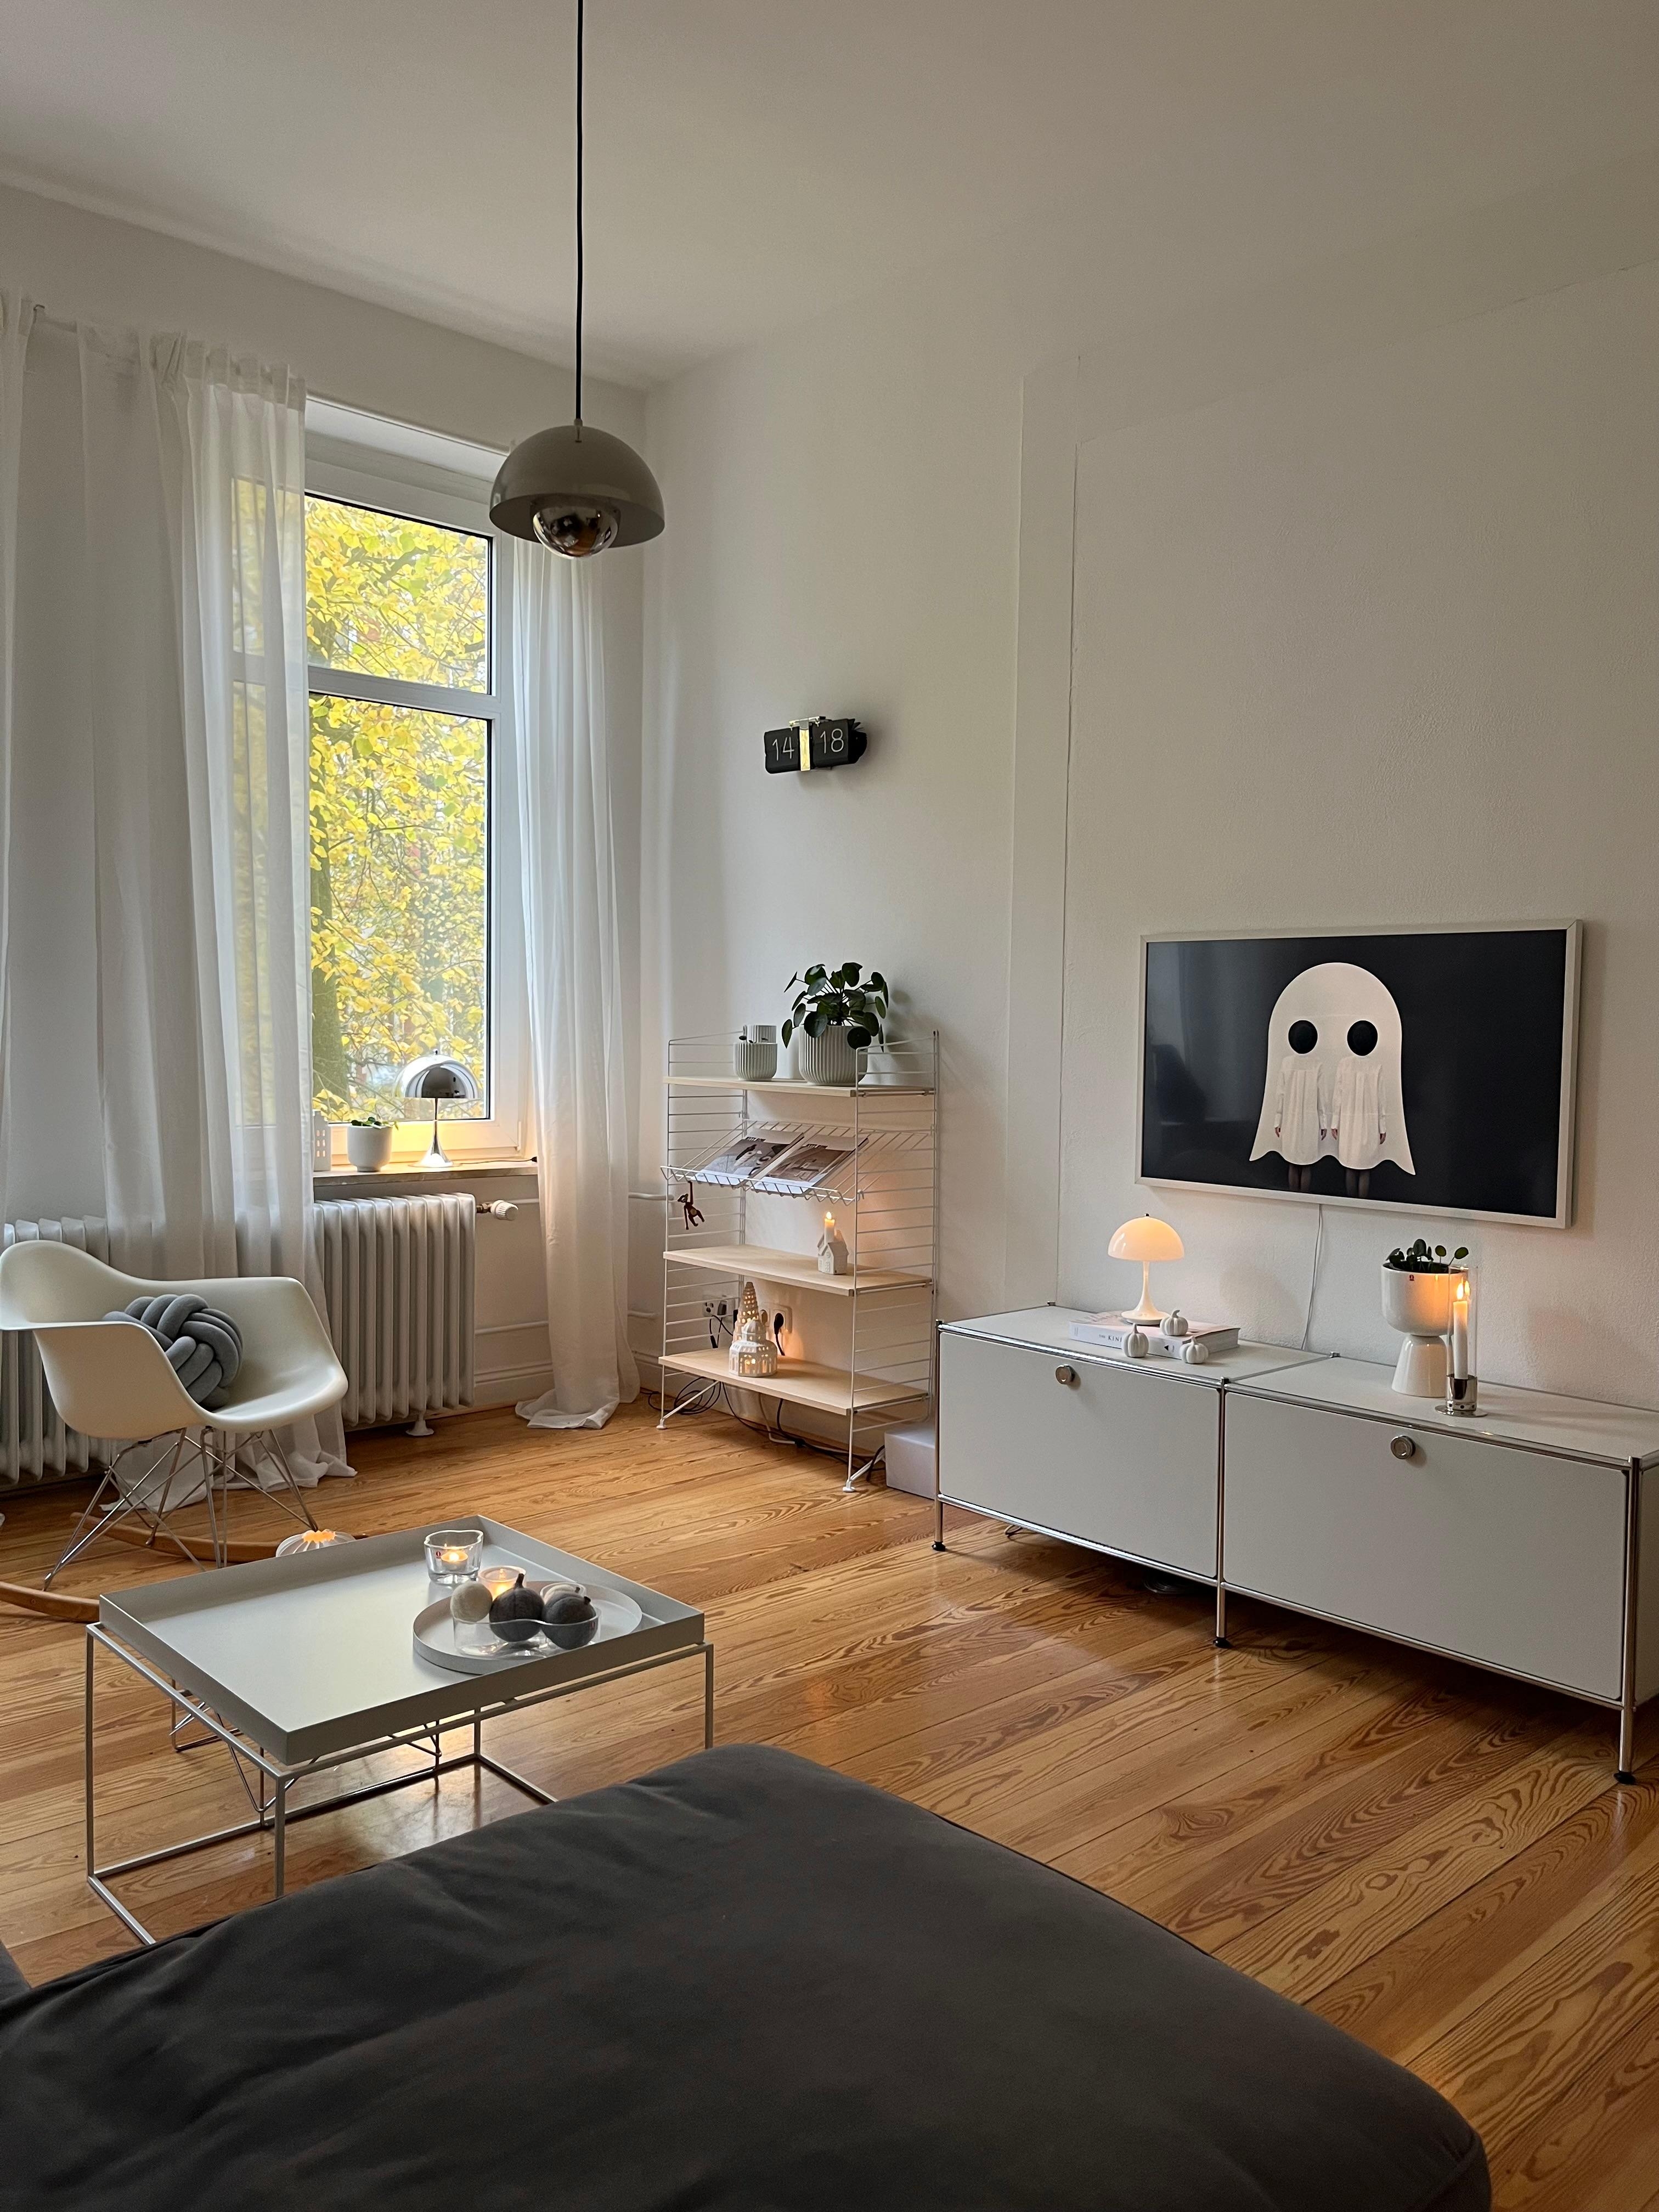 #wohnzimmer #cozyvibes #hyggehome #skandinavischwohnen #designklassiker #leuchtenliebe